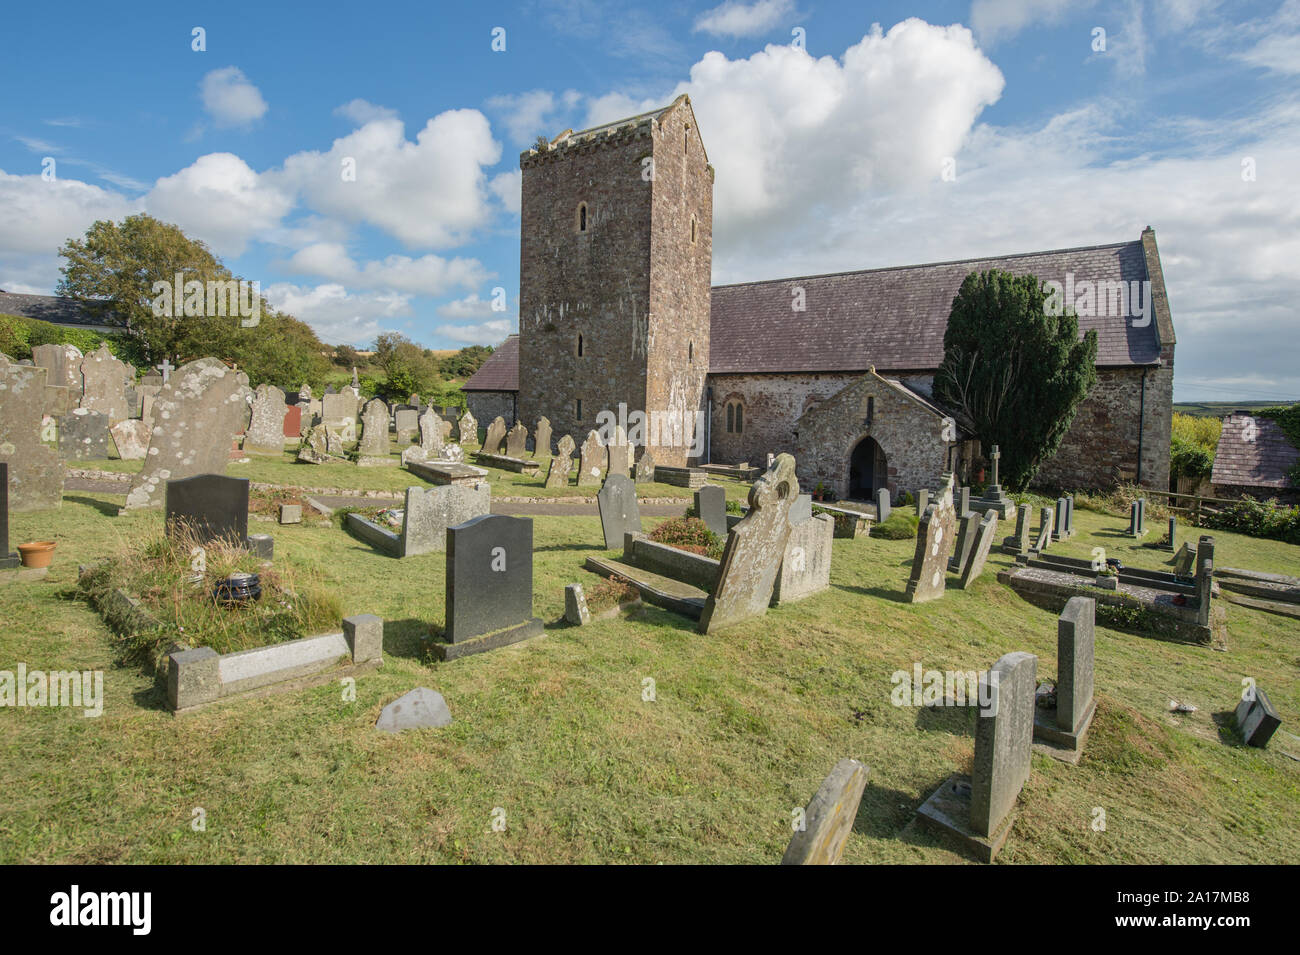 La iglesia de St Cenydd Llangennith , una iglesia del siglo 12 en el sitio de un siglo VI Llançà, o cementerio, que conserva la huella circular original. Llangennith, Gower Gales UK Foto de stock